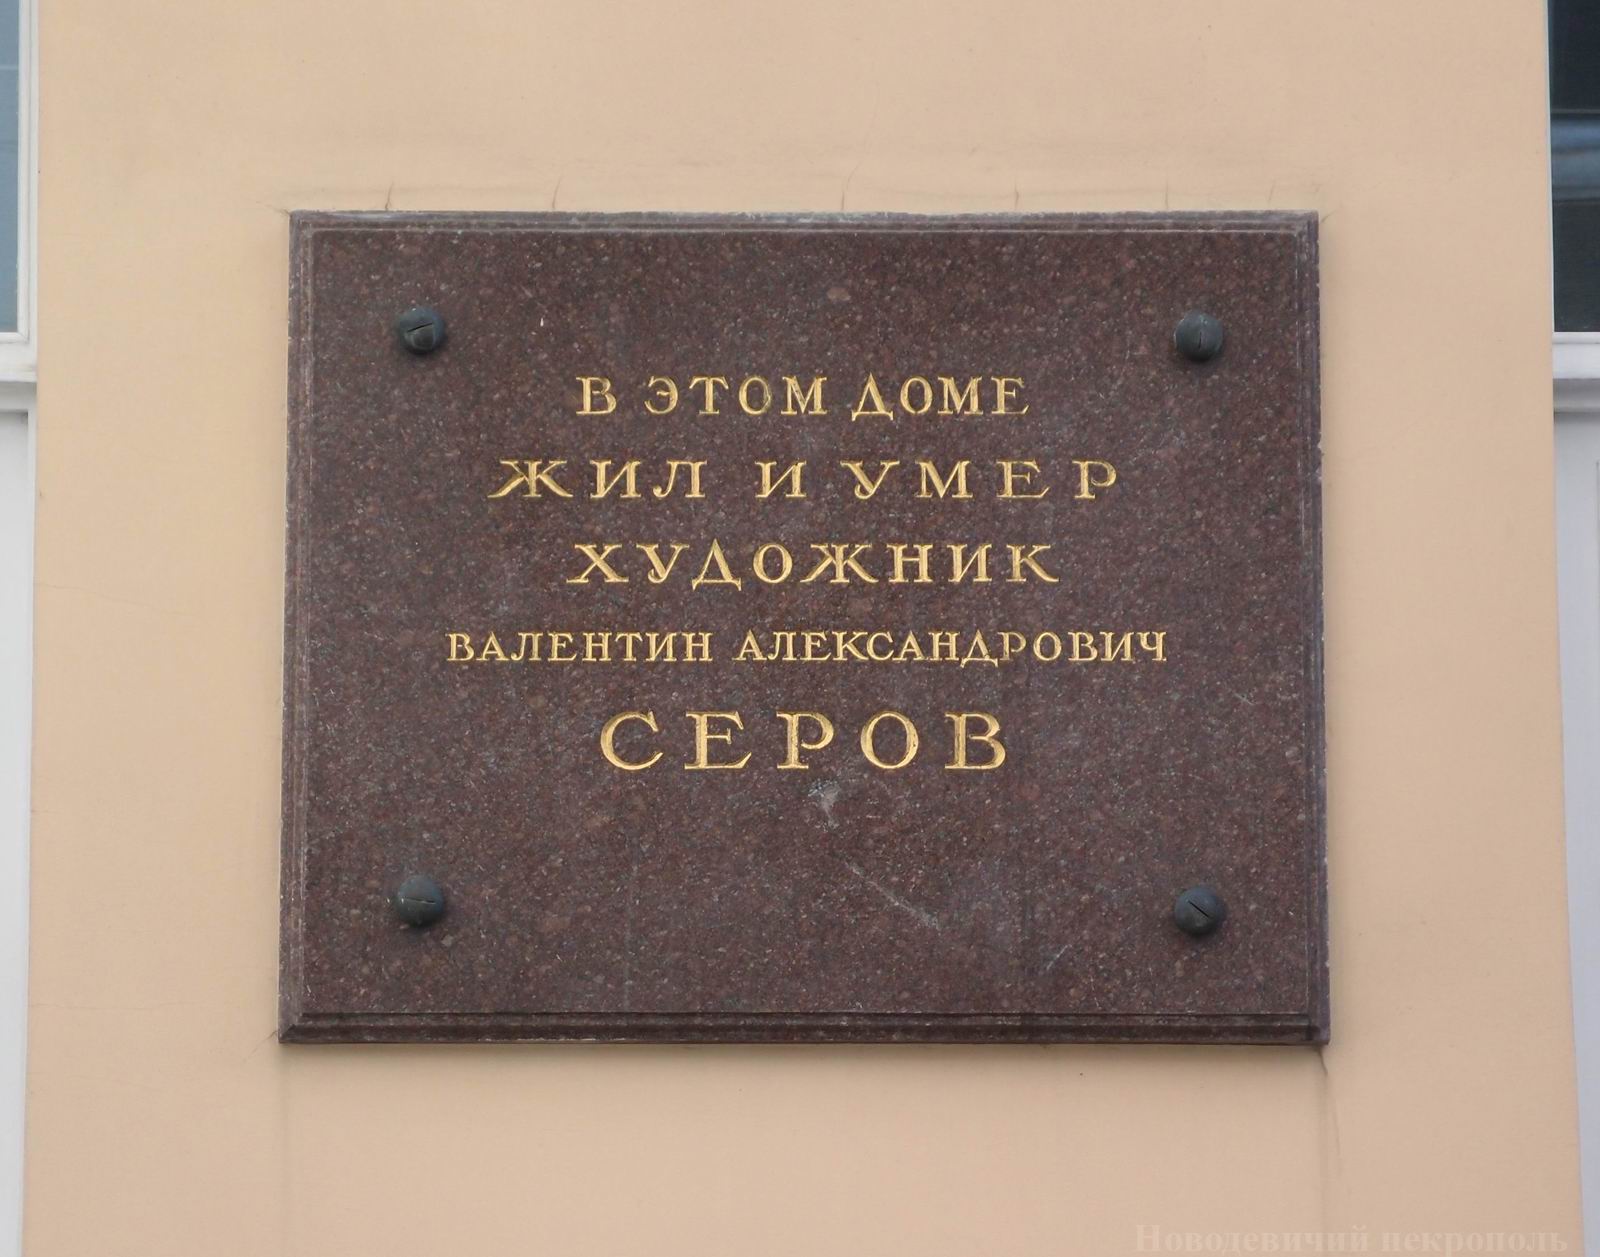 Мемориальная доска Серову В.А. (1865–1911), в Староваганьковском переулке, дом 21, открыта 14.2.1958.